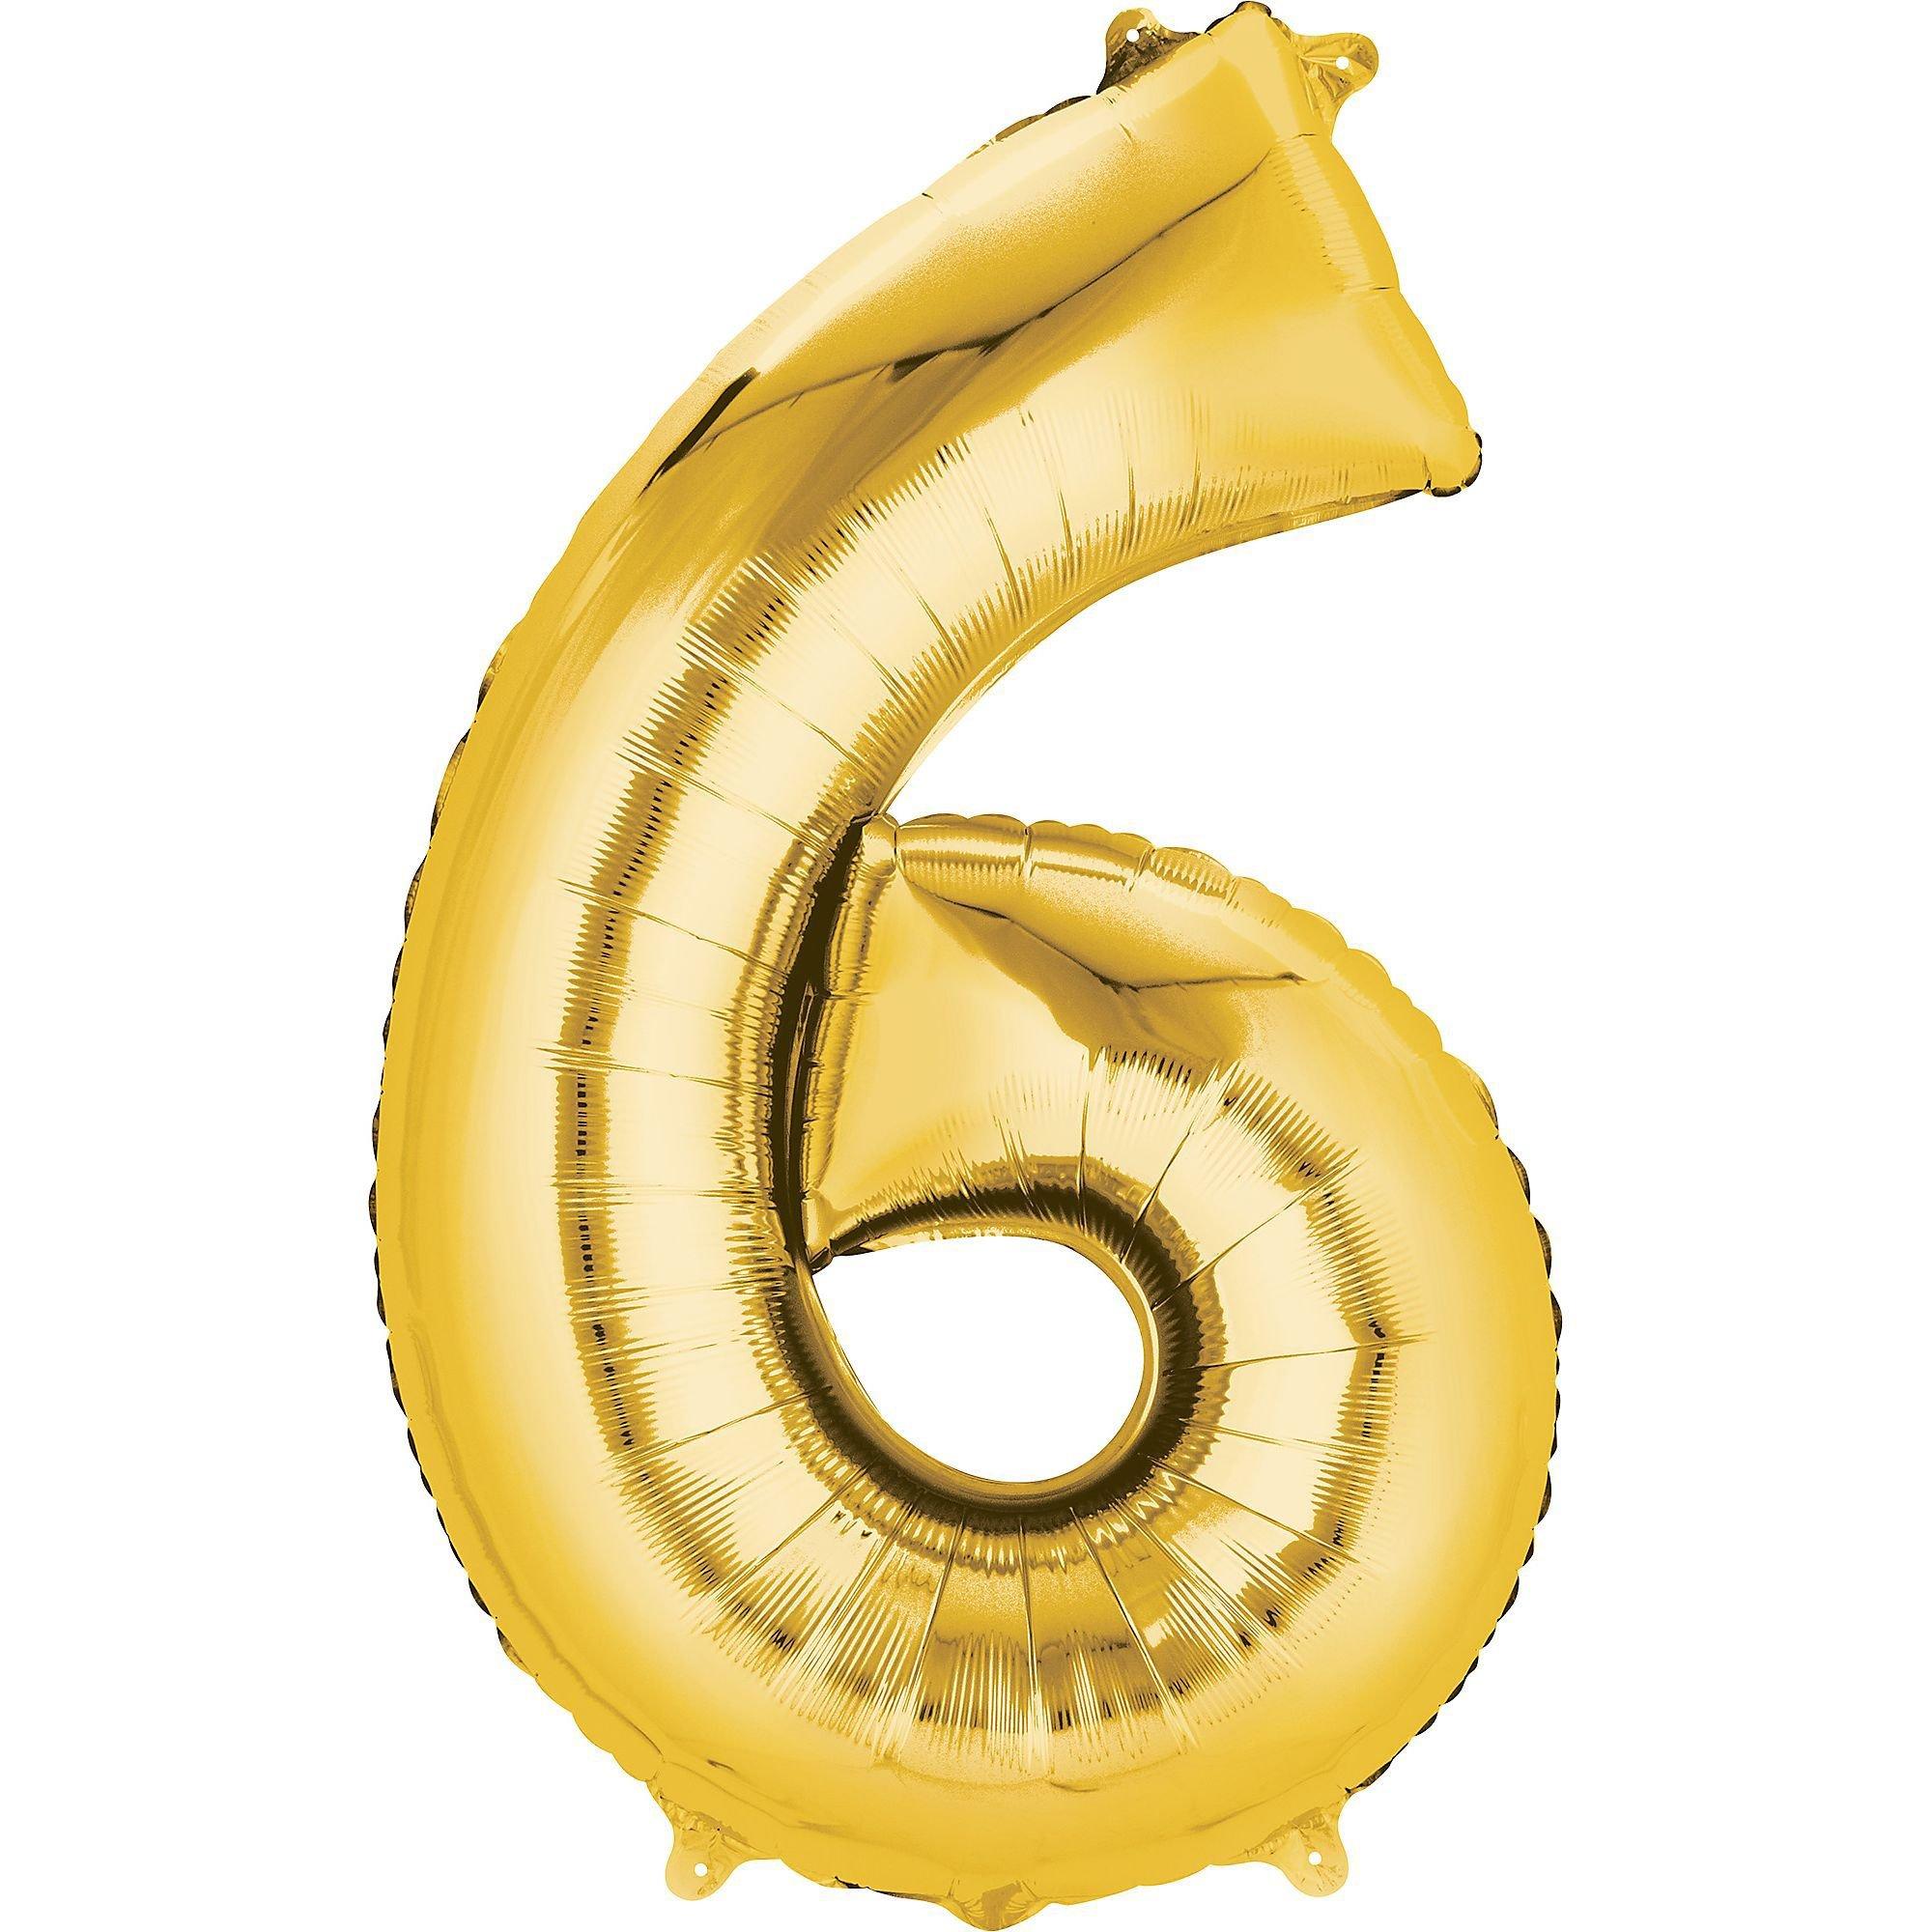 Smaak huiselijk Fluisteren 34" Gold Number 6 Balloon | Party City